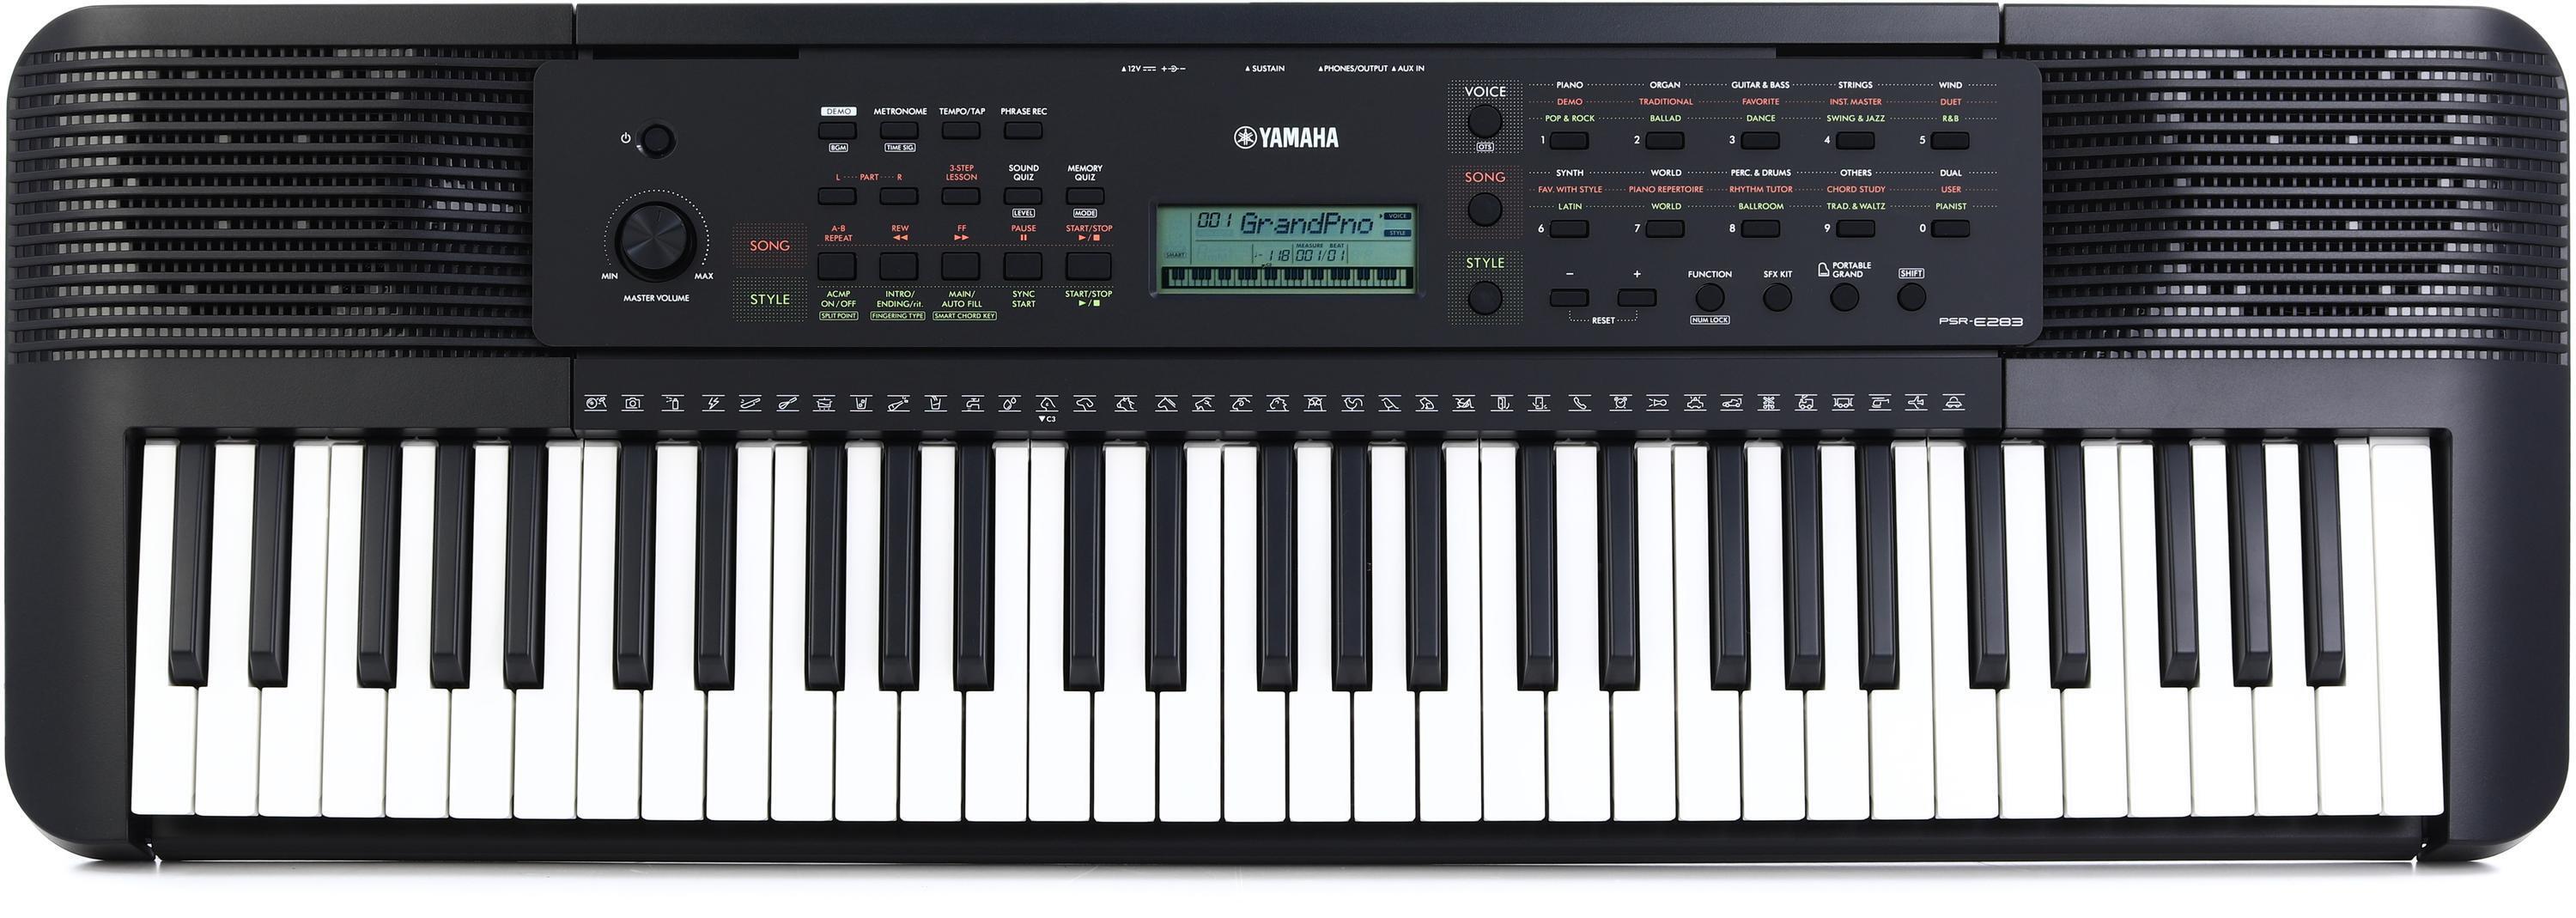 Yamaha PSRE283 61-key Entry-level Portable Keyboard